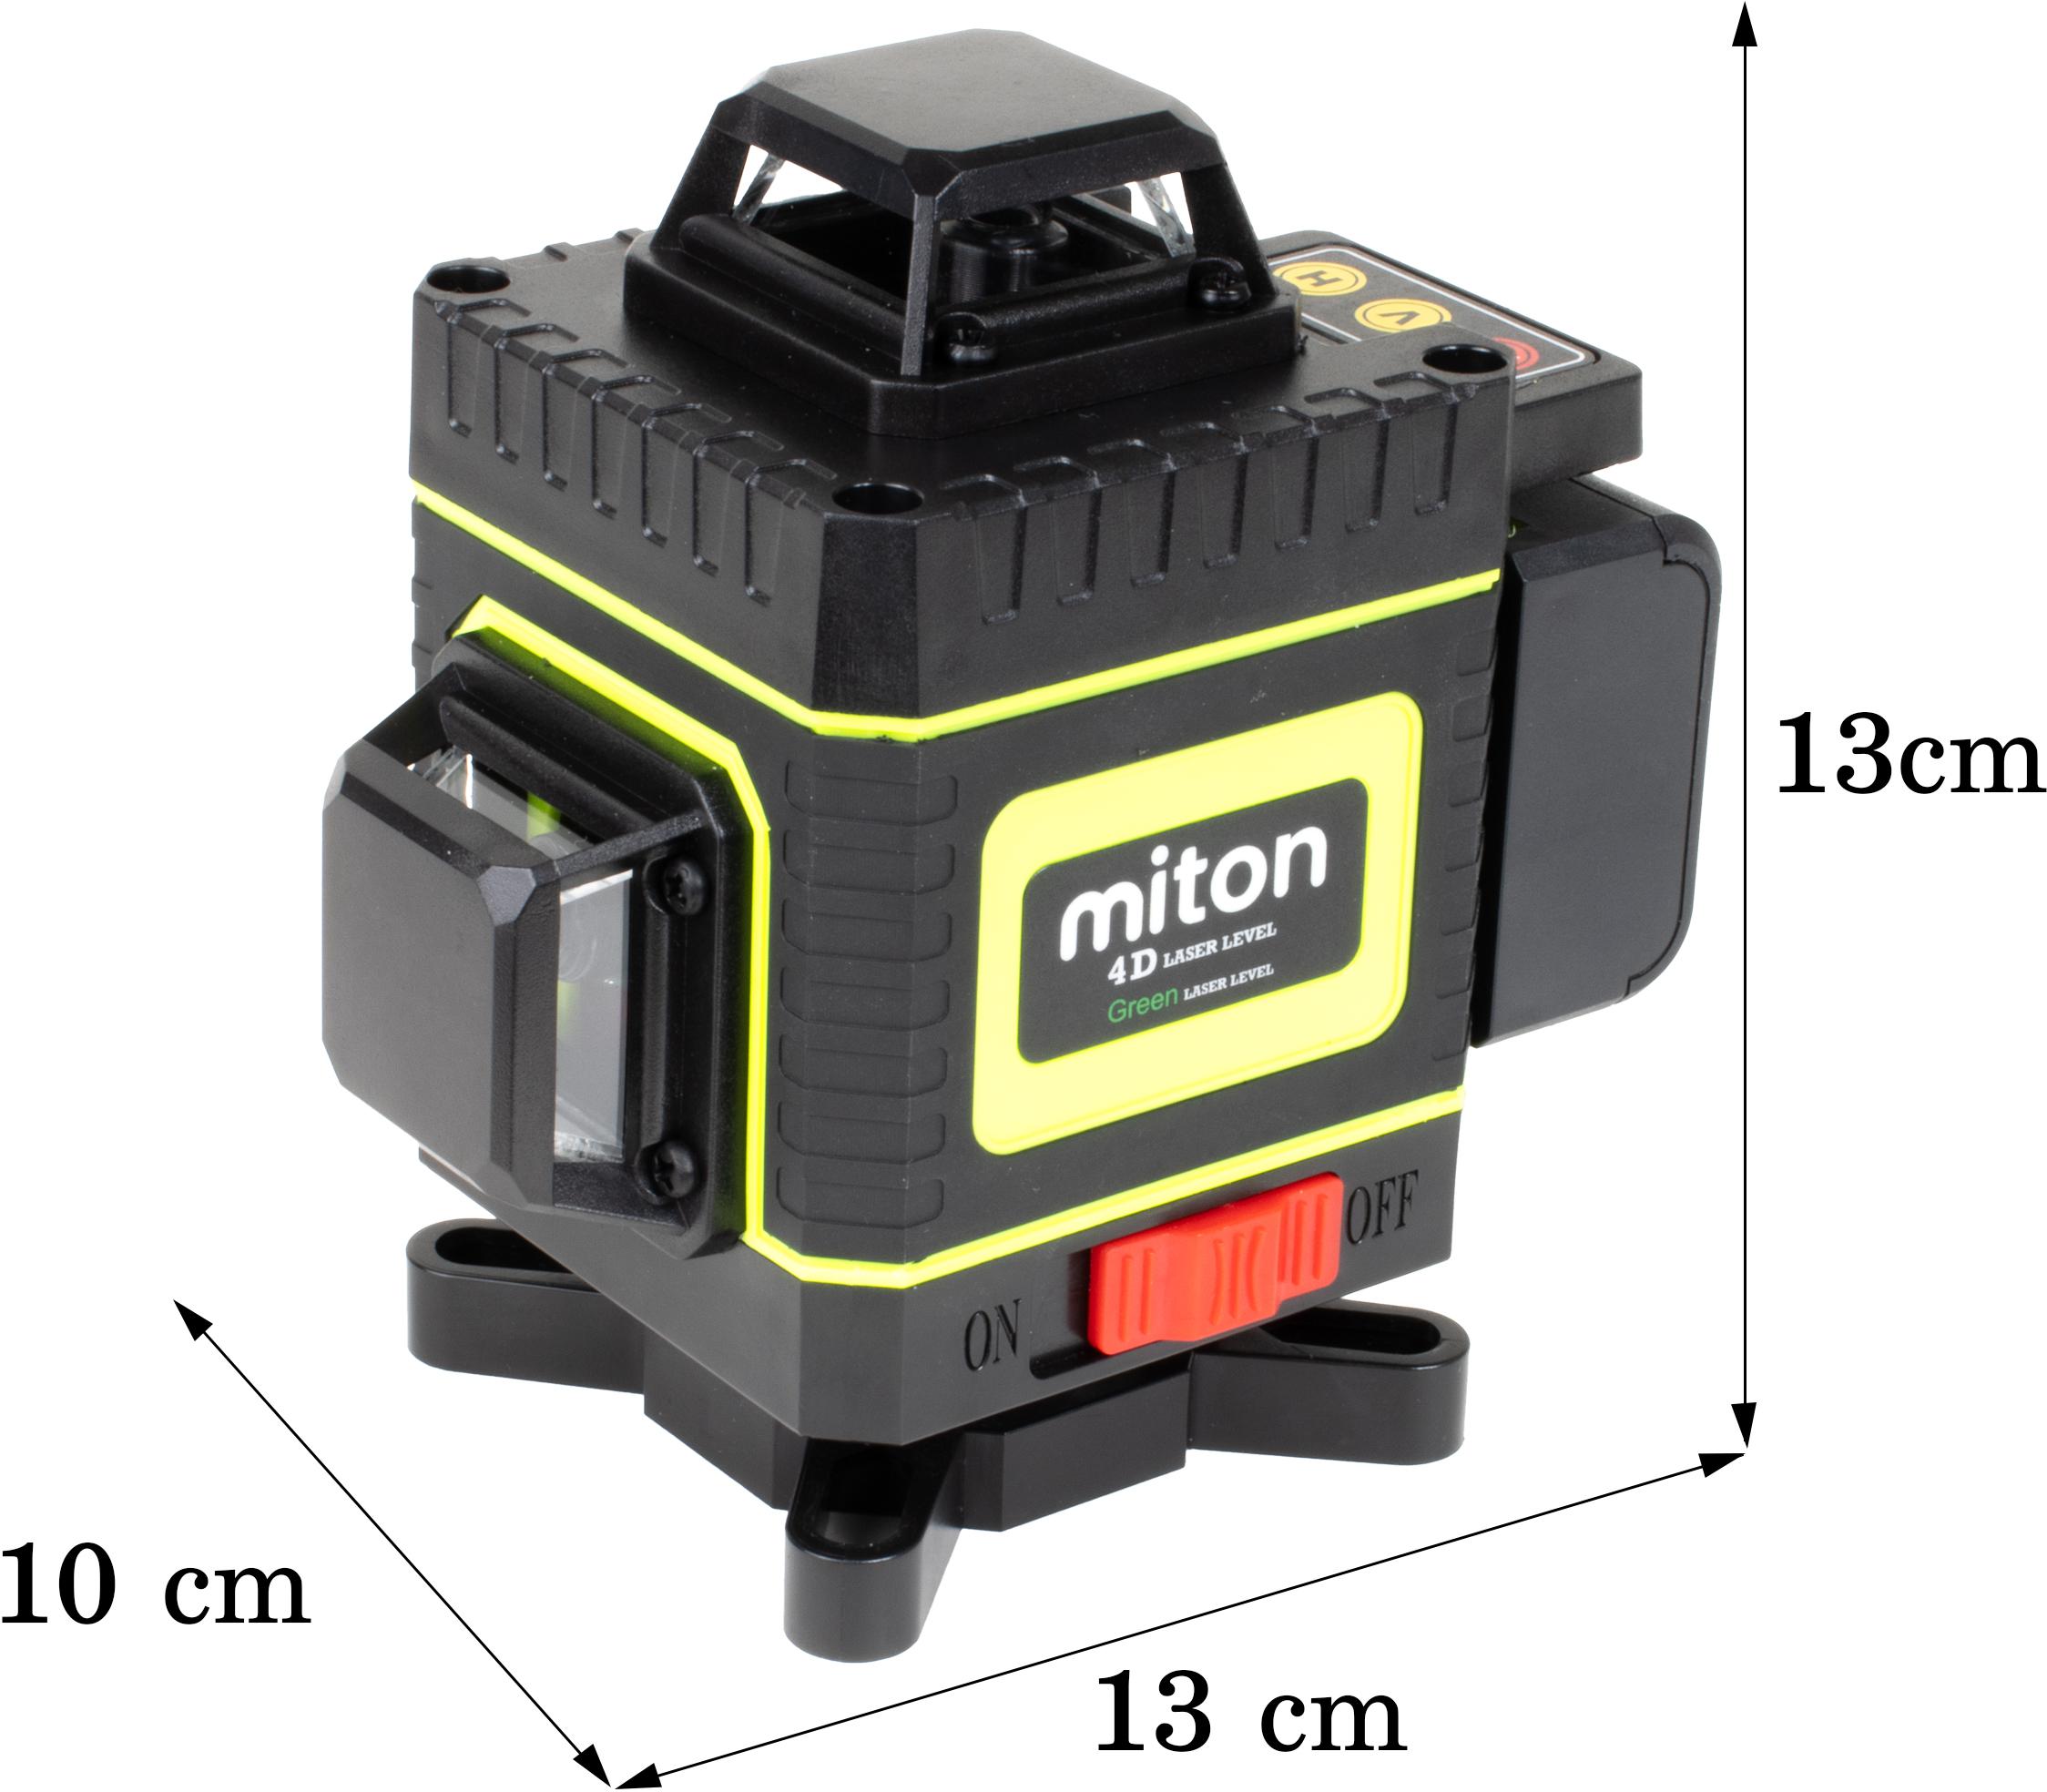 Poziomica laserowa 4D 16 linii MITON MT-16360 - specyfikacja i dane techniczne lasera krzyżowego: